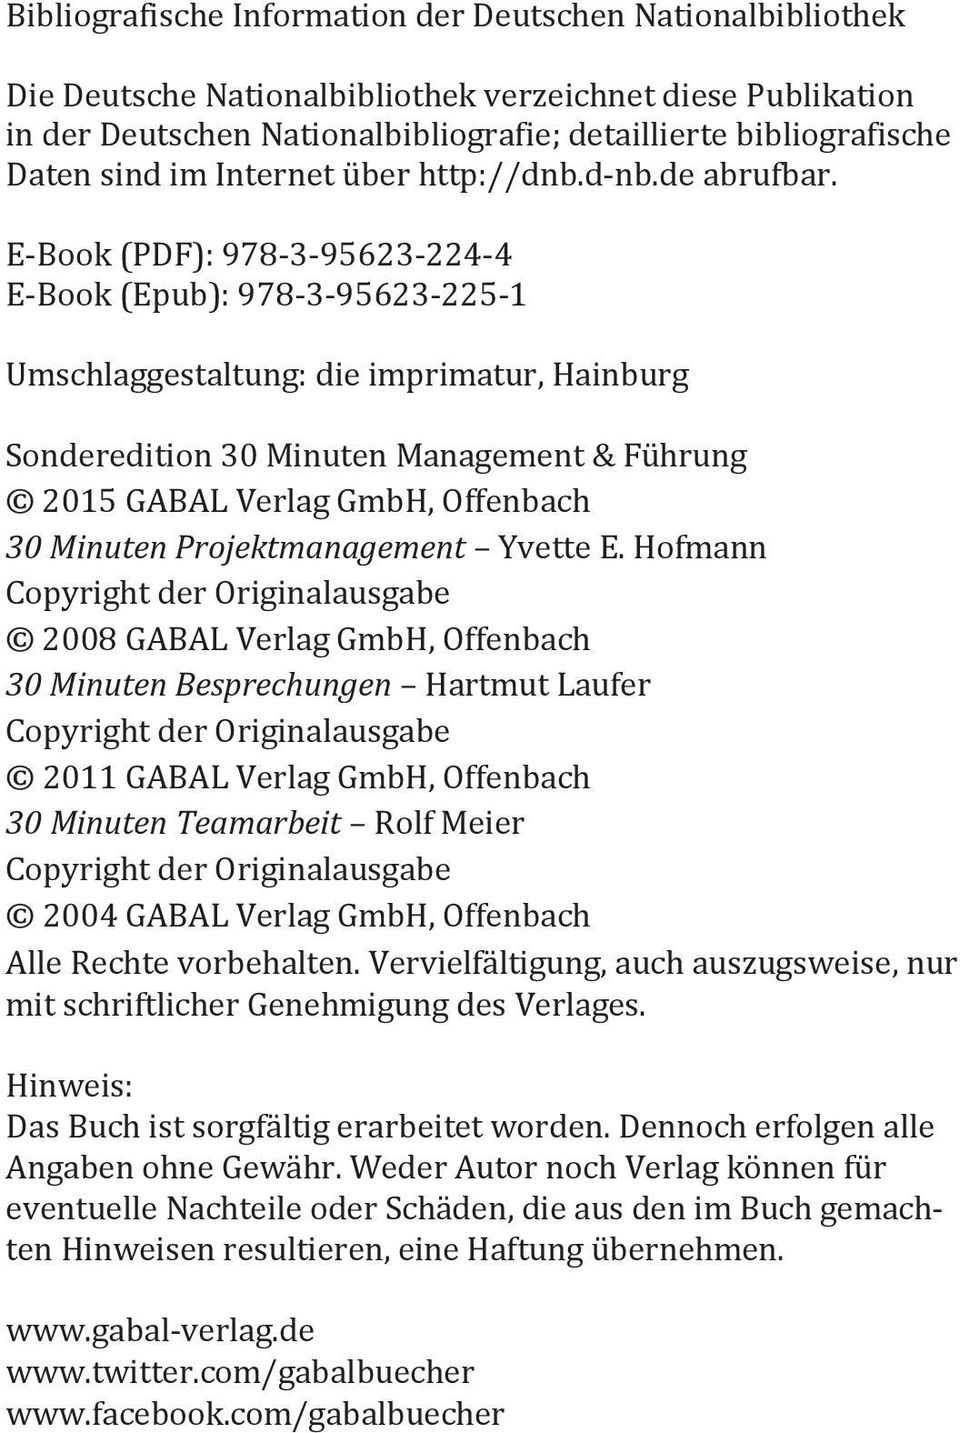 E-Book (PDF): 978-3-95623-224-4 E-Book (Epub): 978-3-95623-225-1 Umschlaggestaltung: die imprimatur, Hainburg Sonderedition 30 Minuten Management & Führung 2015 GABAL Verlag GmbH, Offenbach 30